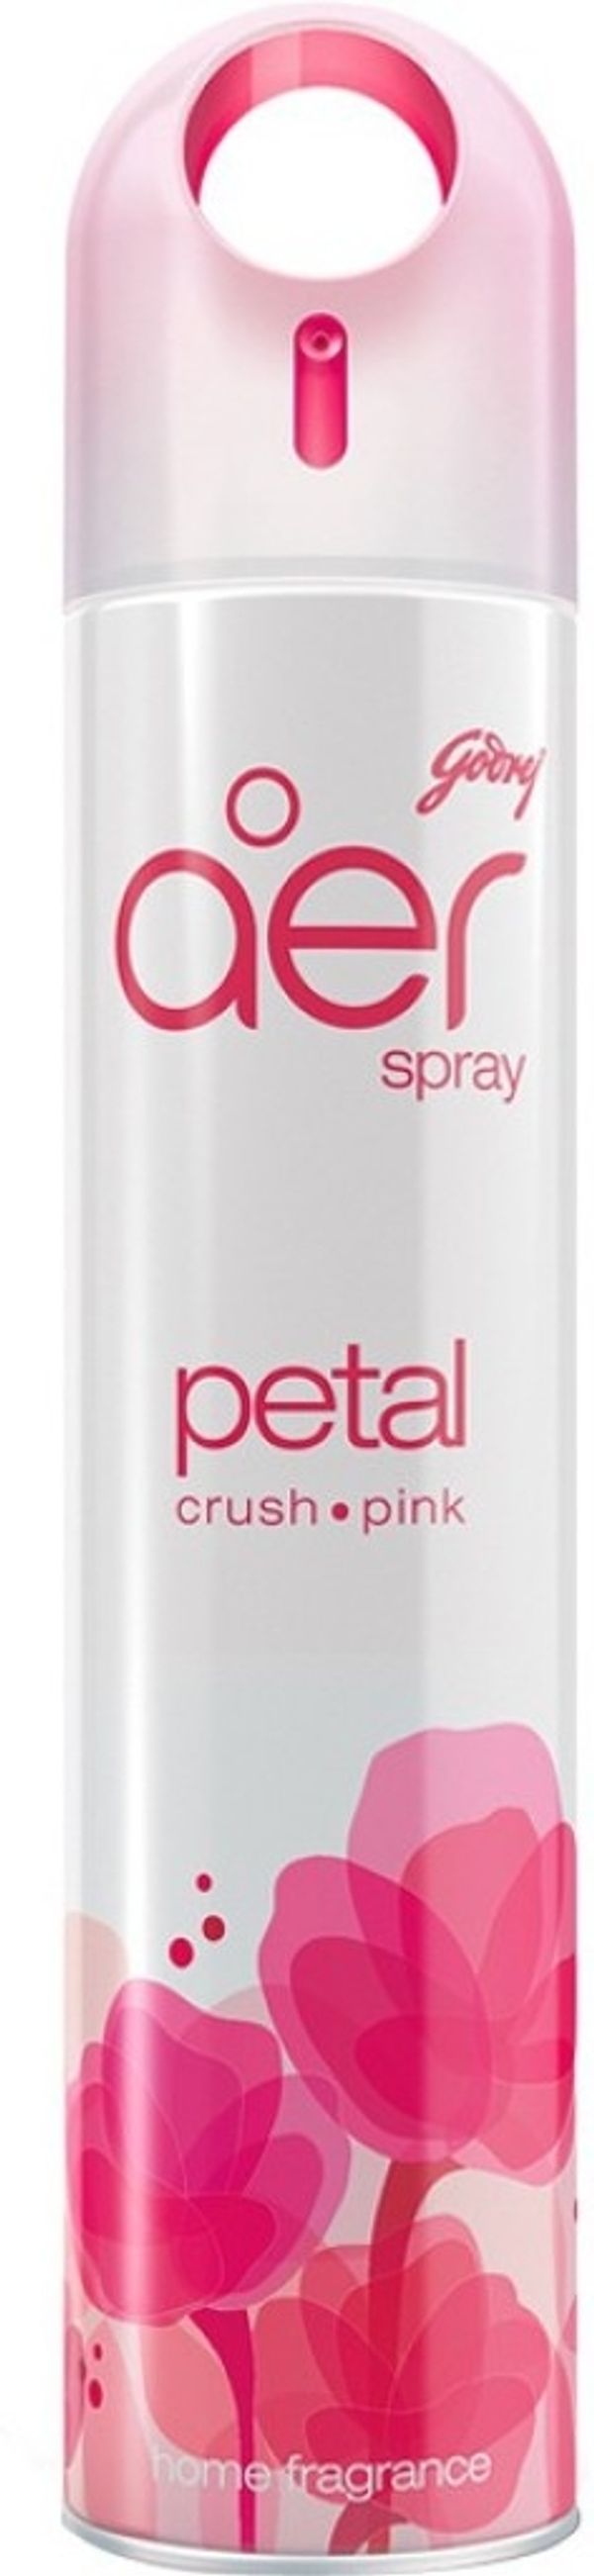 Godrej Room freshener Patel Godrej Air Petal Crush Pink Room Freshner,125gm